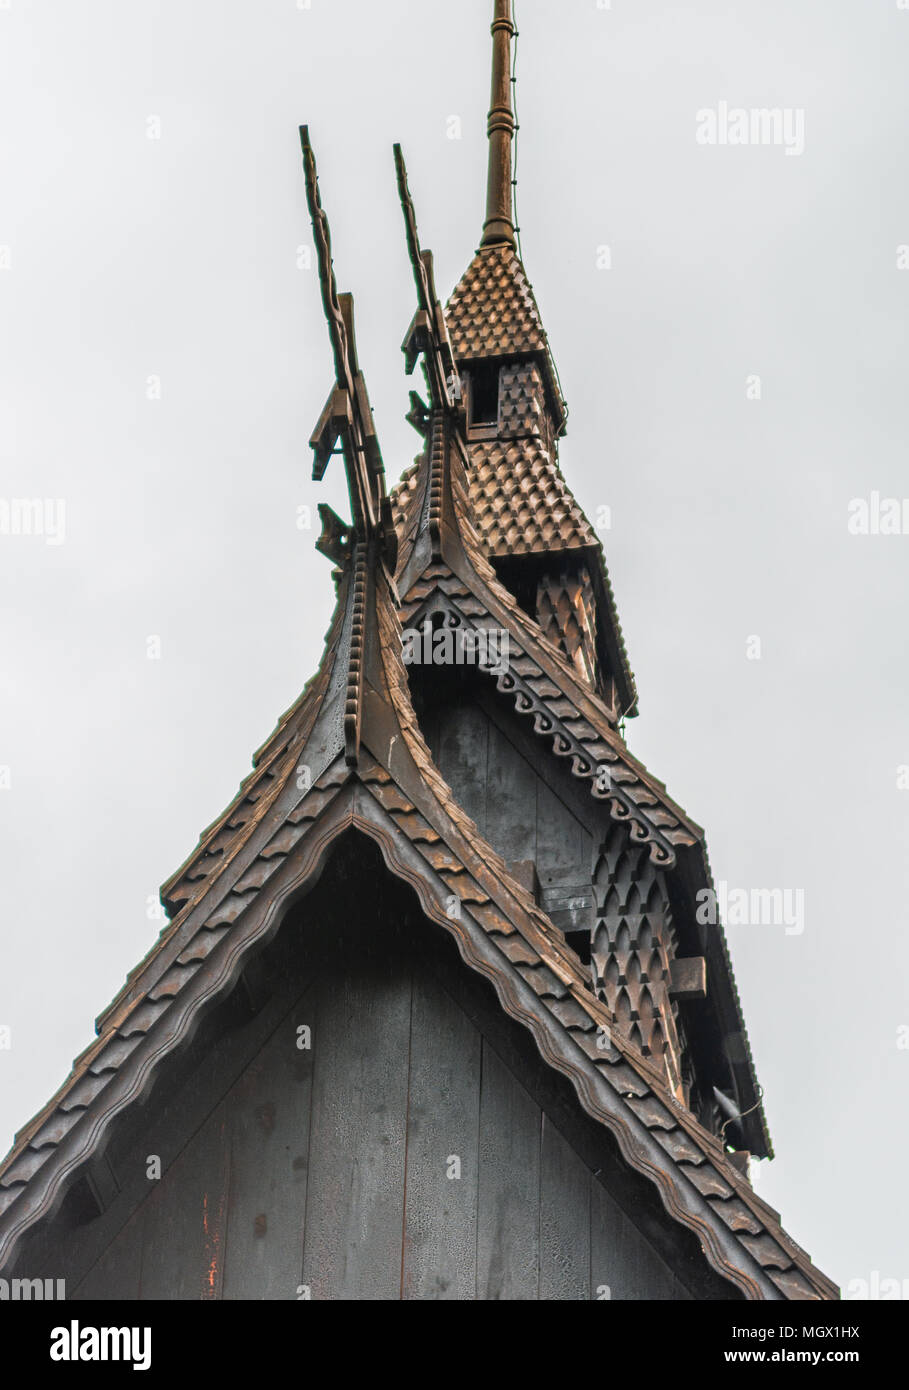 Norwegische Holzkirche in der Nähe von Bergen (Stabkirche Fantoft) Stockfoto